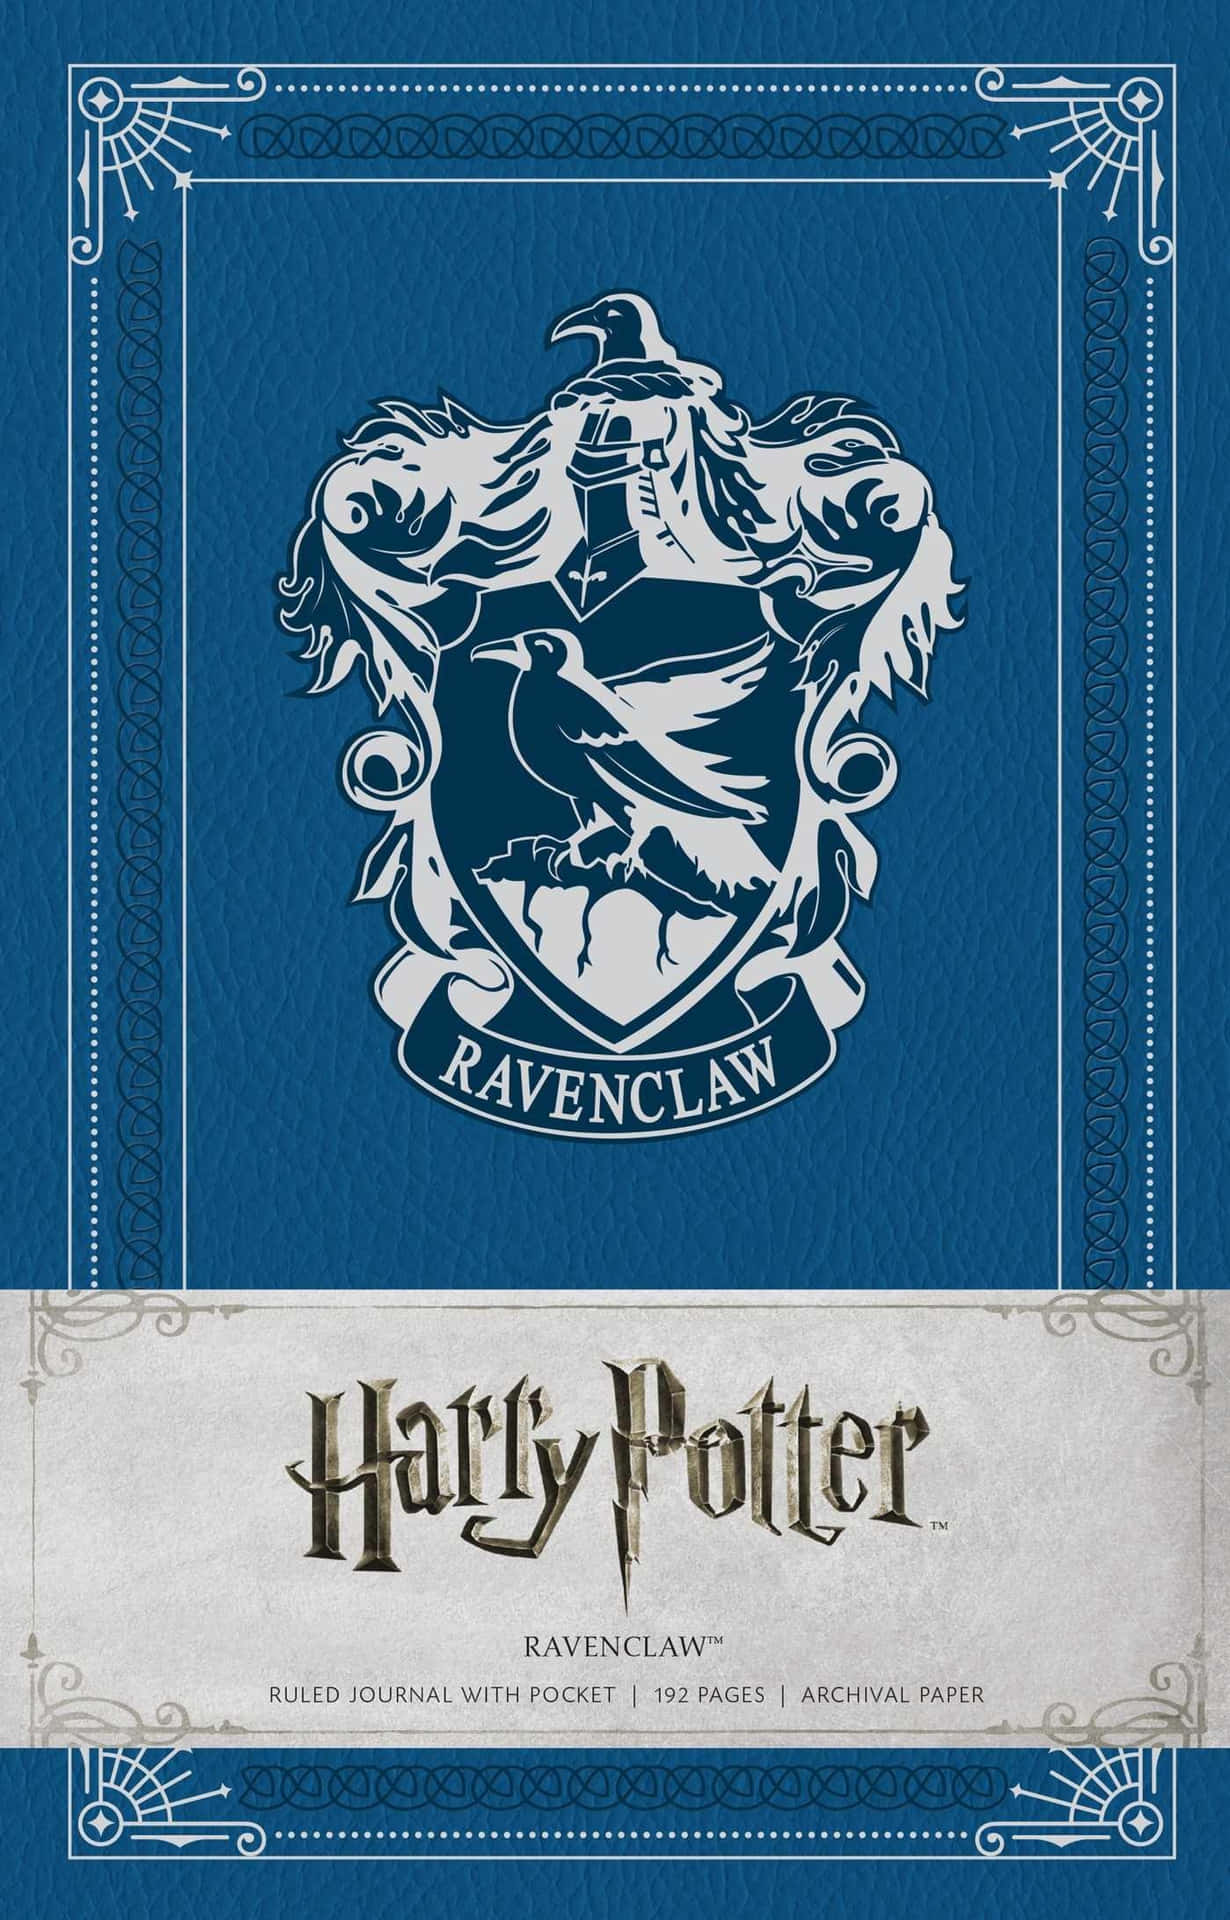 Træf kloge valg med Harry Potter Ravenclaw Wallpaper